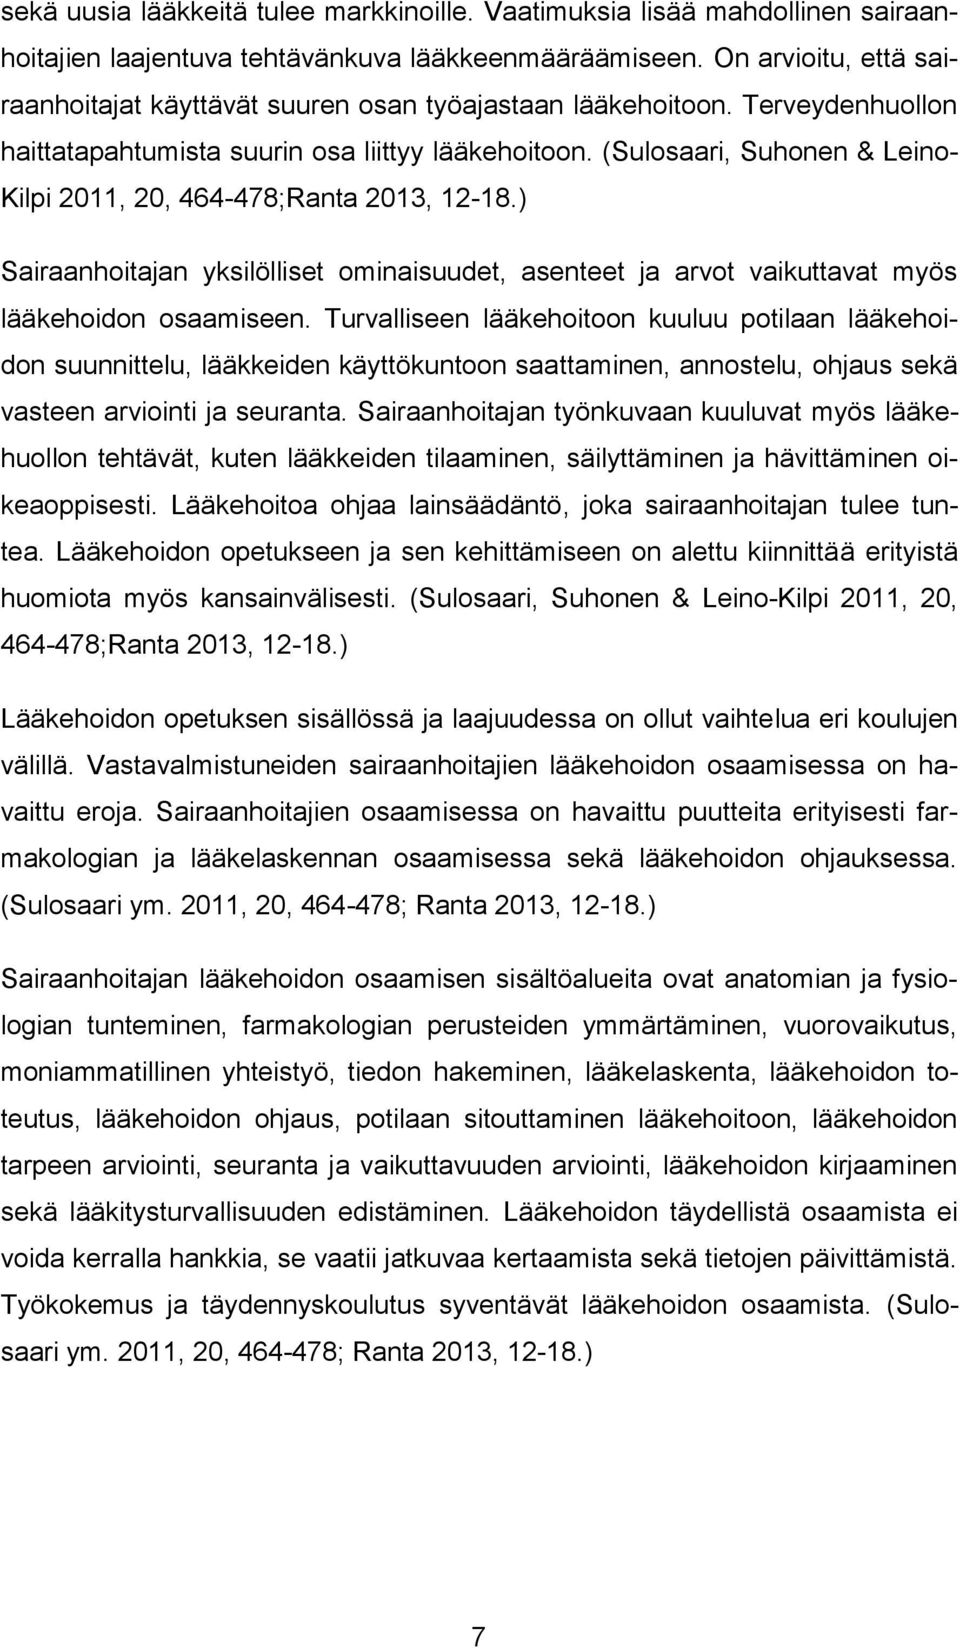 (Sulosaari, Suhonen & Leino- Kilpi 2011, 20, 464-478;Ranta 2013, 12-18.) Sairaanhoitajan yksilölliset ominaisuudet, asenteet ja arvot vaikuttavat myös lääkehoidon osaamiseen.